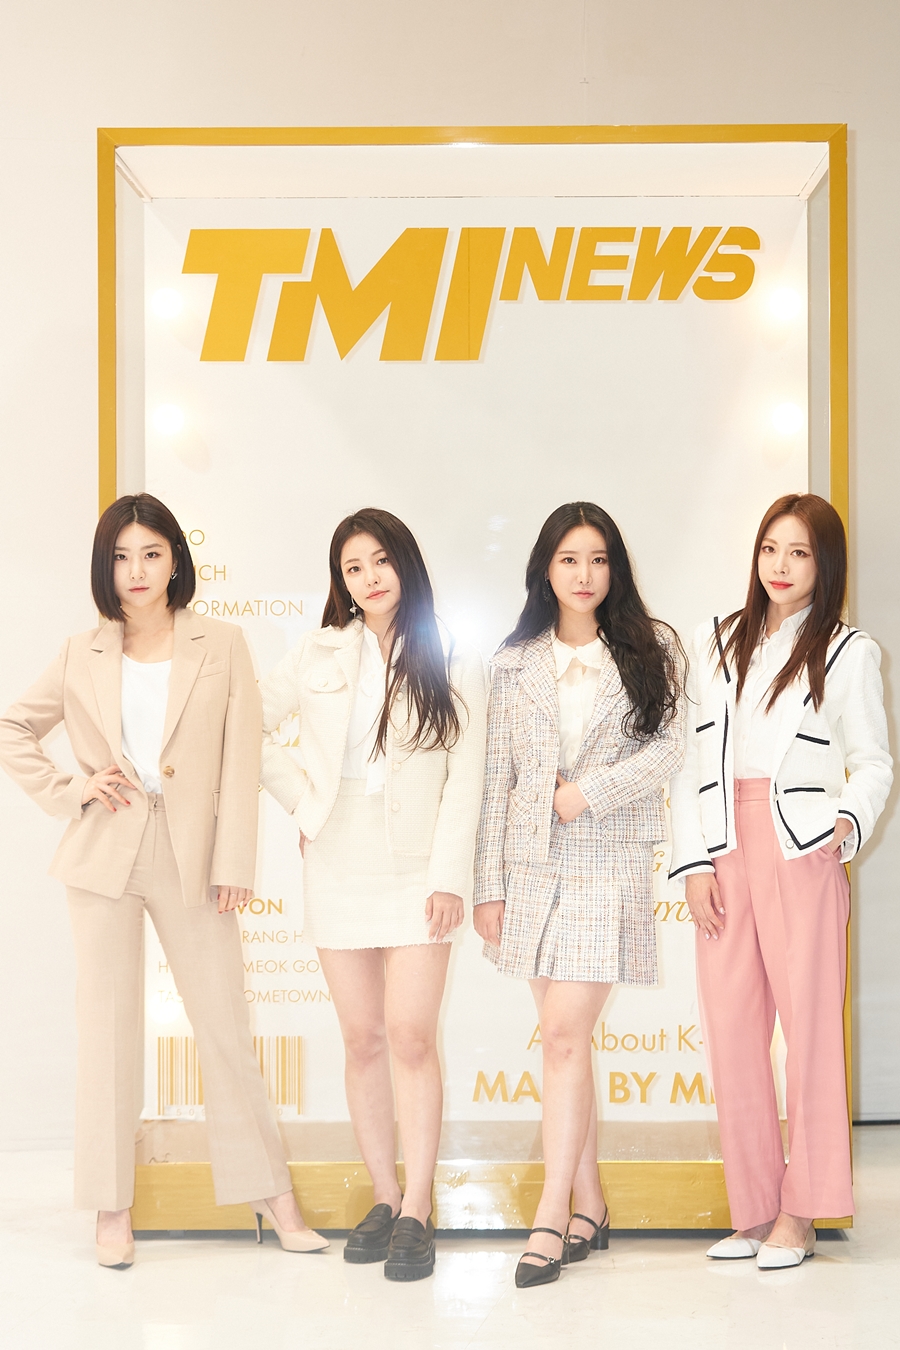 TMI뉴스 온라인 제작발표회 / 사진: Mnet 제공